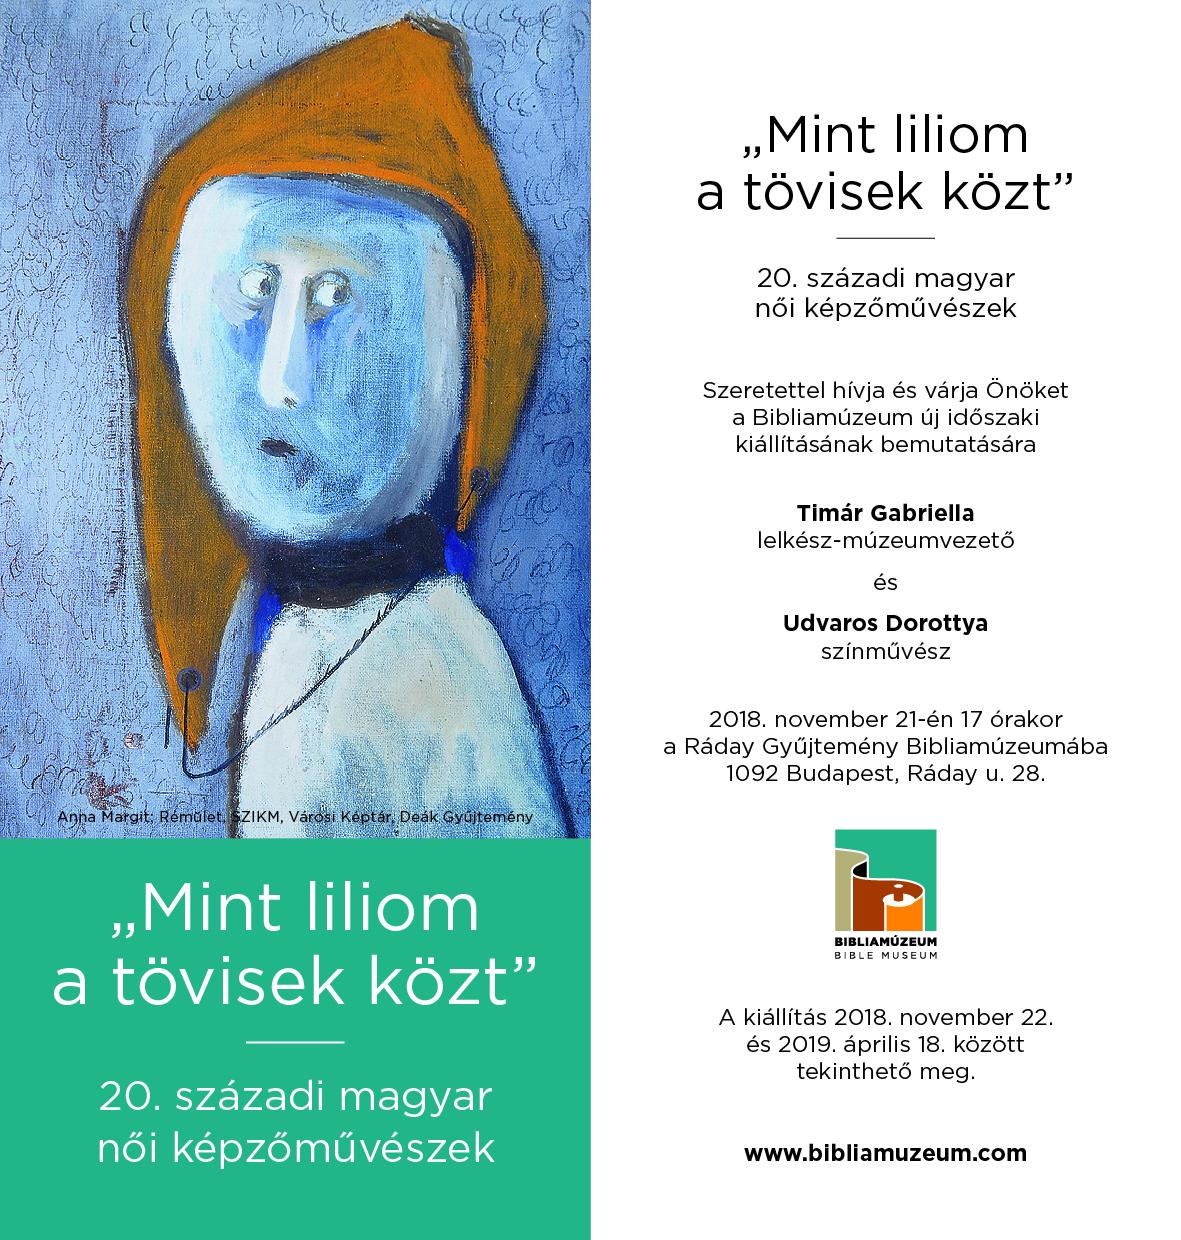 20. századi magyar női képzőművészek időszaki kiállítása a Bibliamúzeumban.